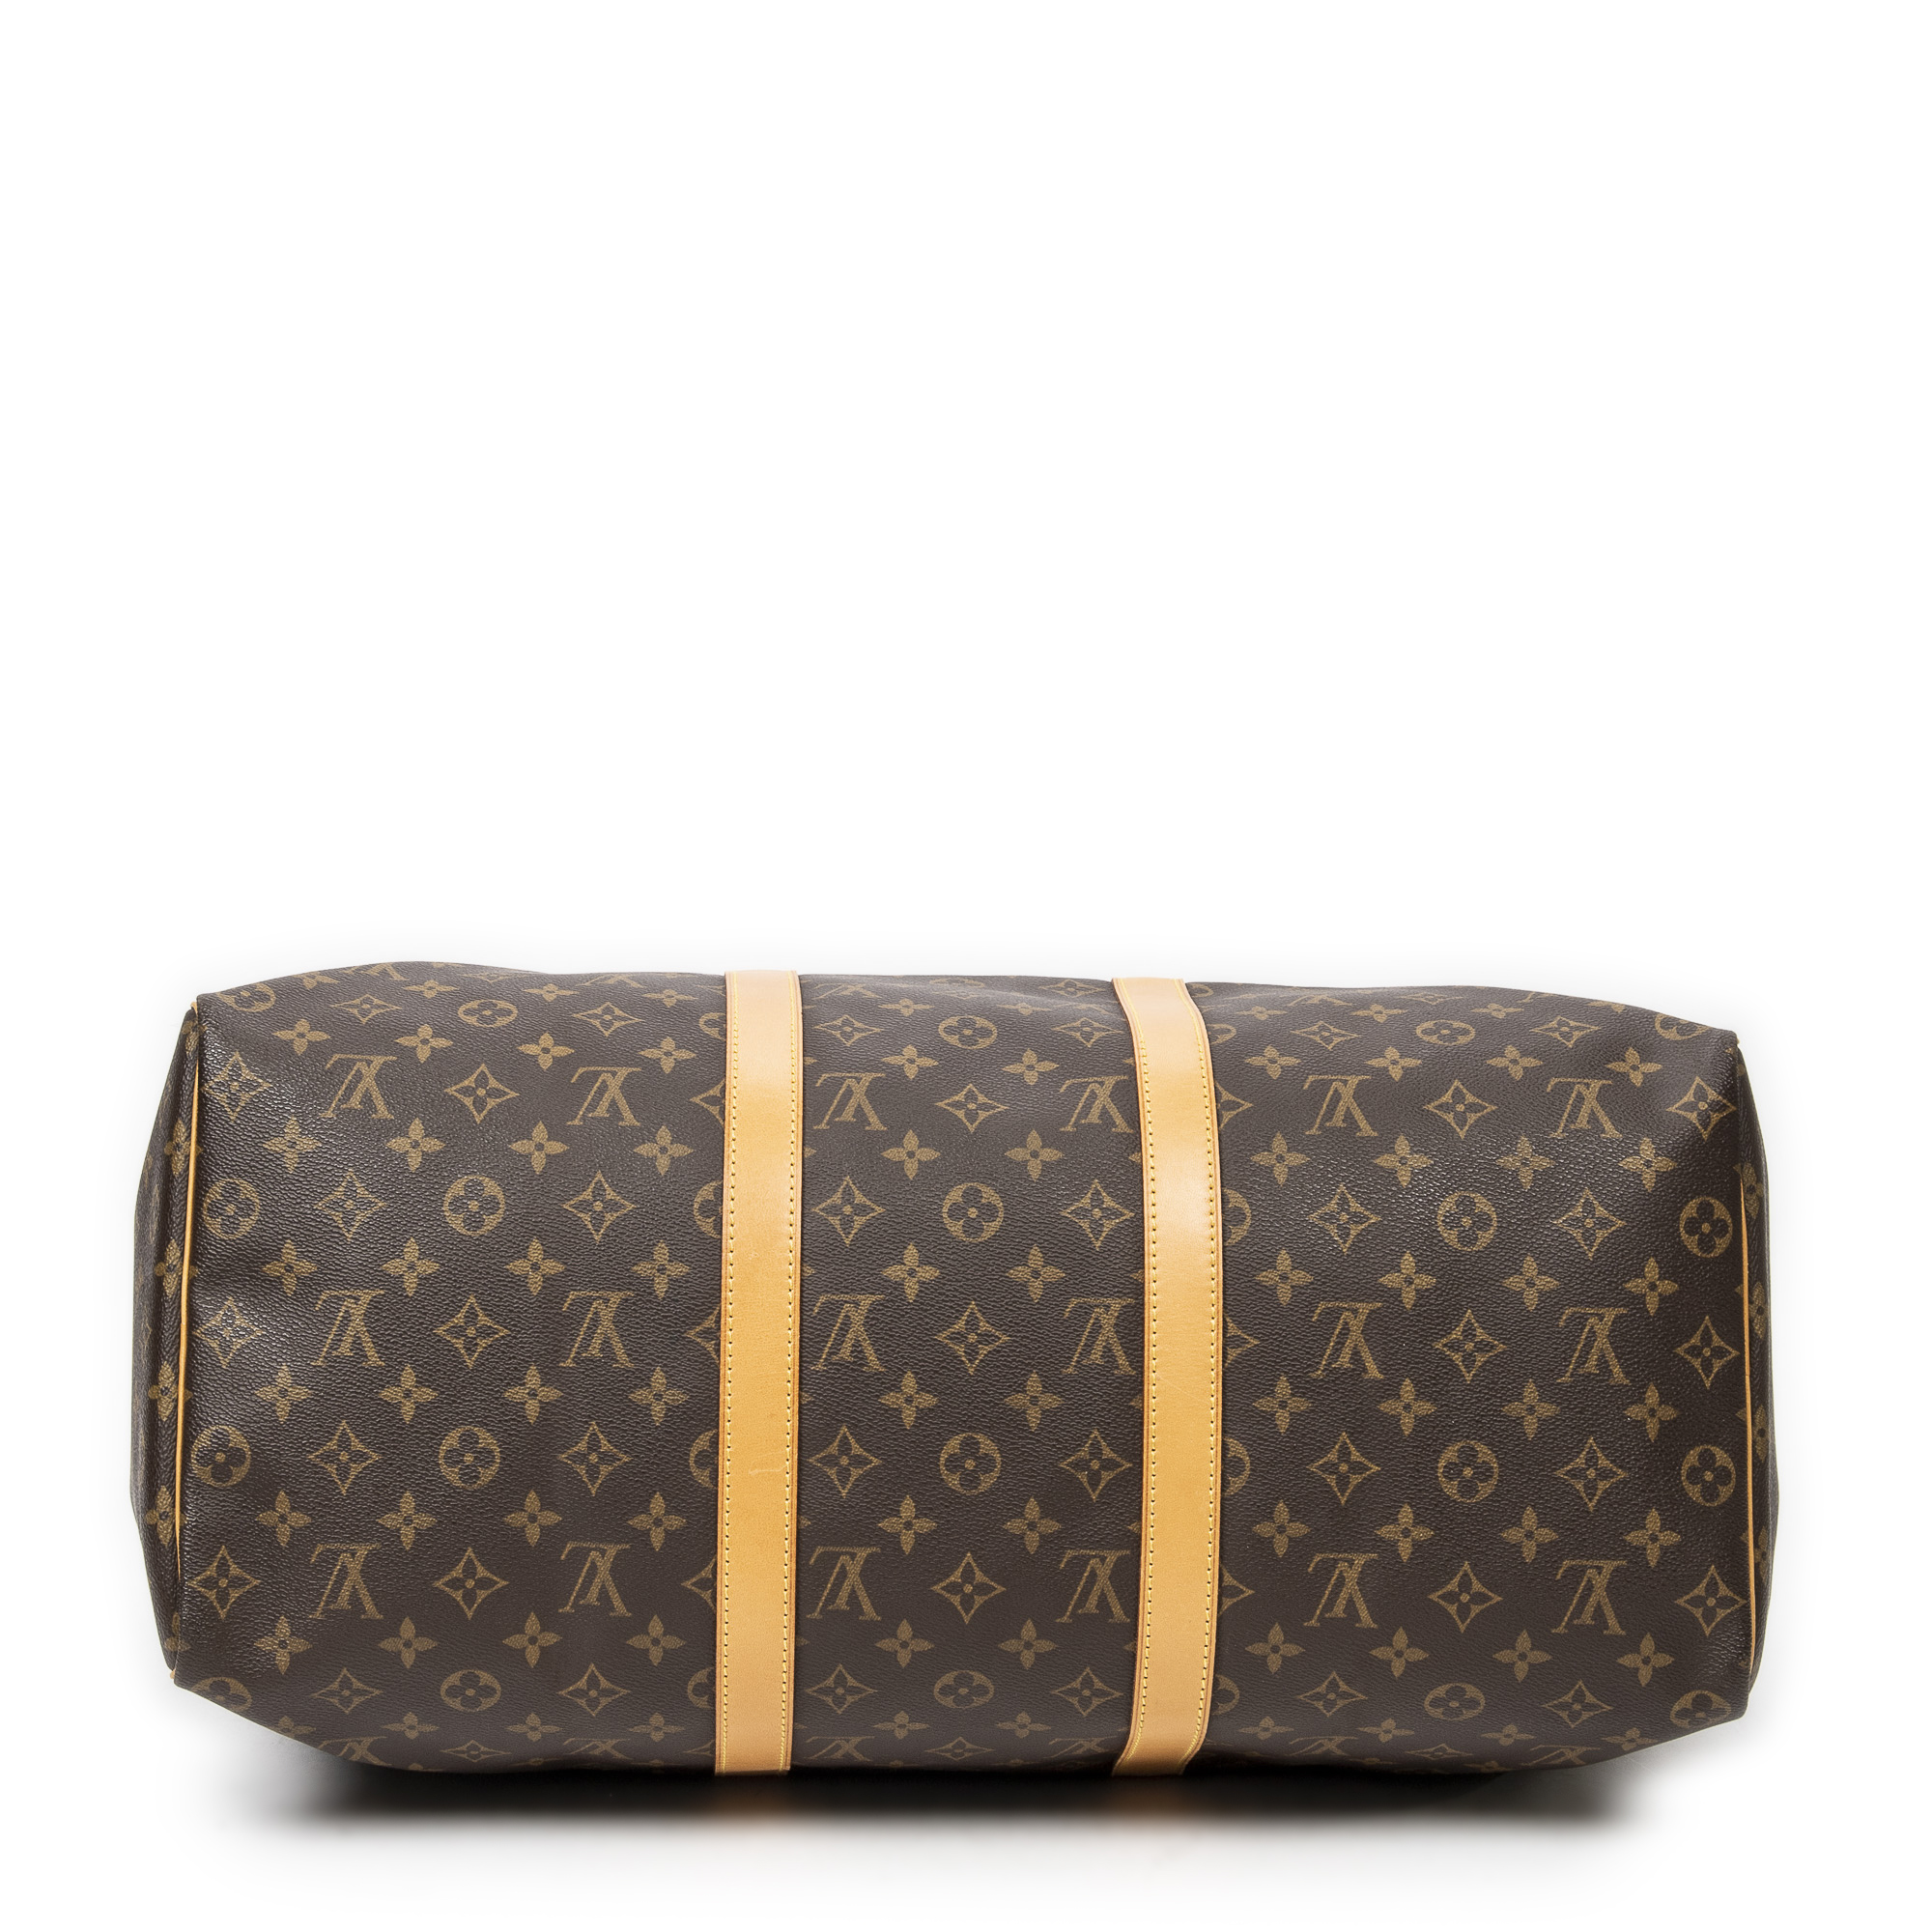 Louis_Vuitton Keepall Duffle Bag, Size: Zero Size